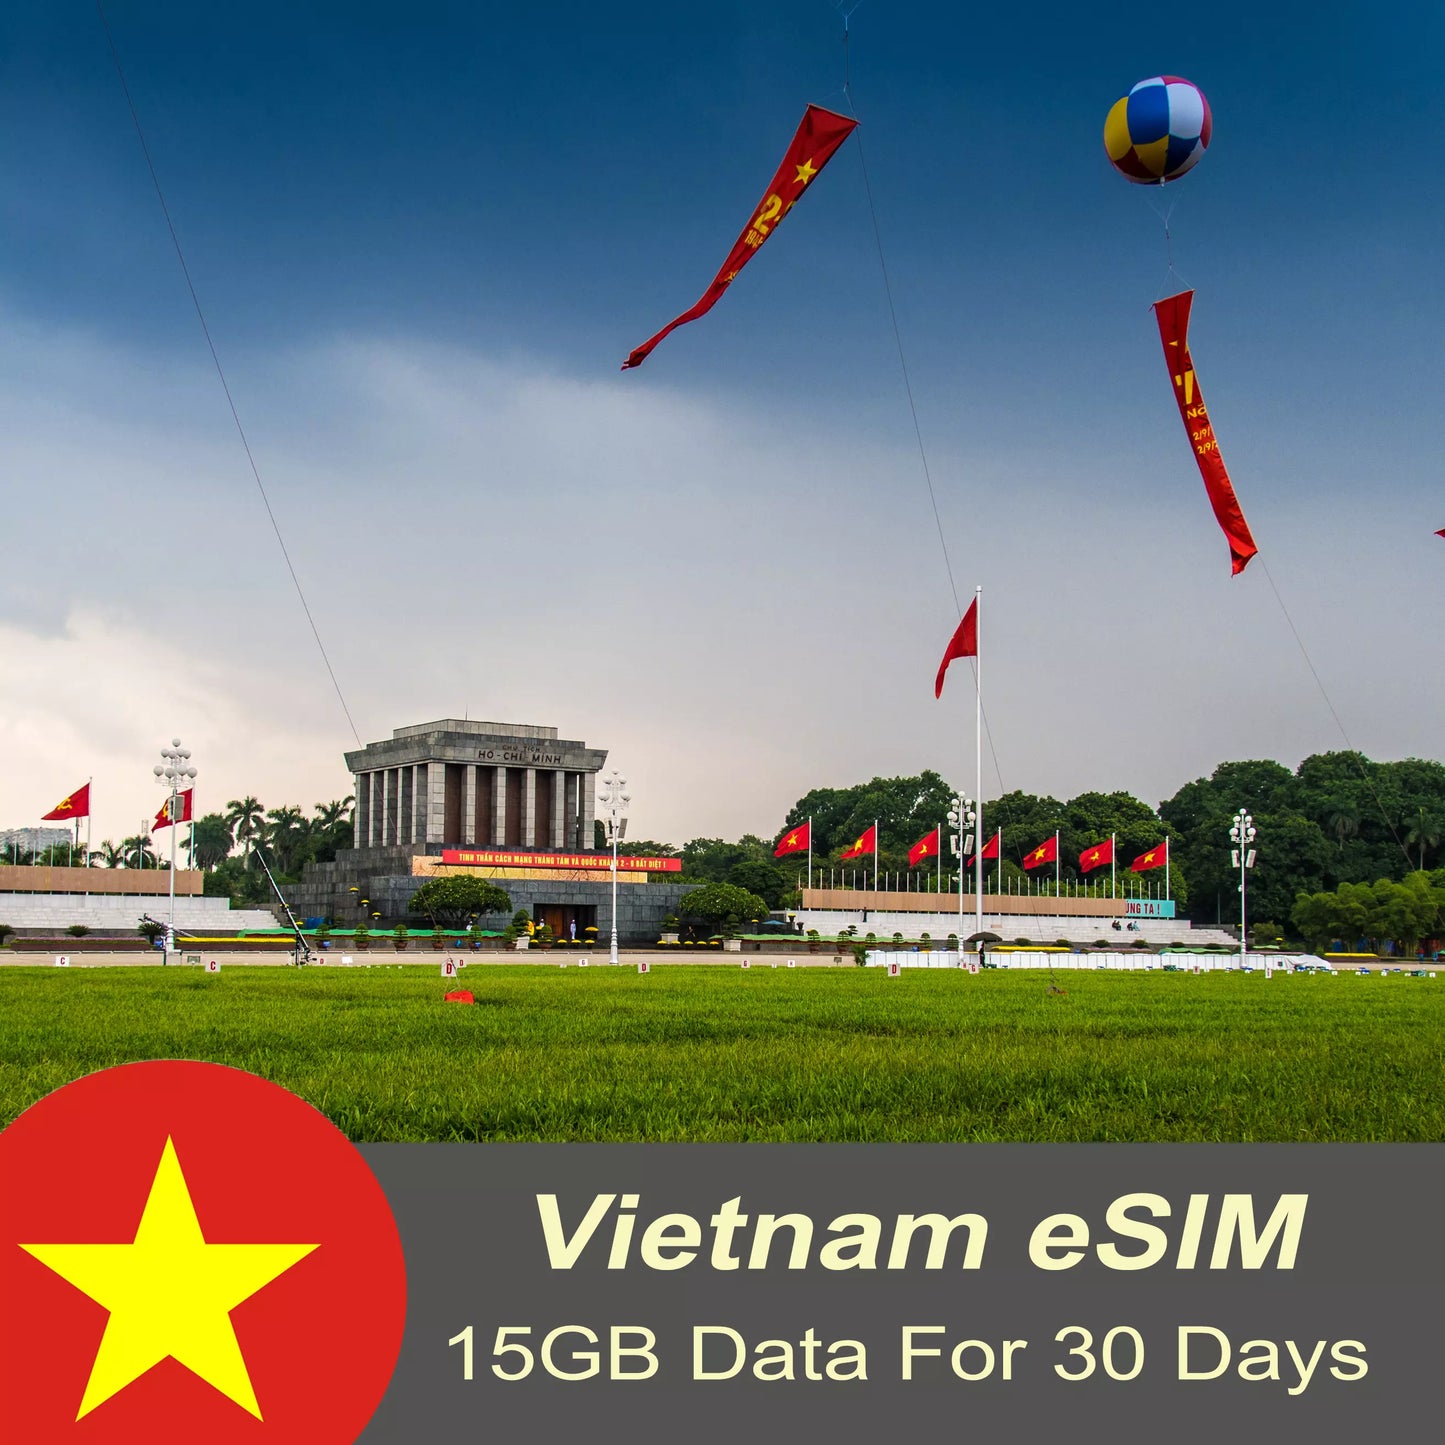 Vietnam Tourist eSIM 15GB - 30 days